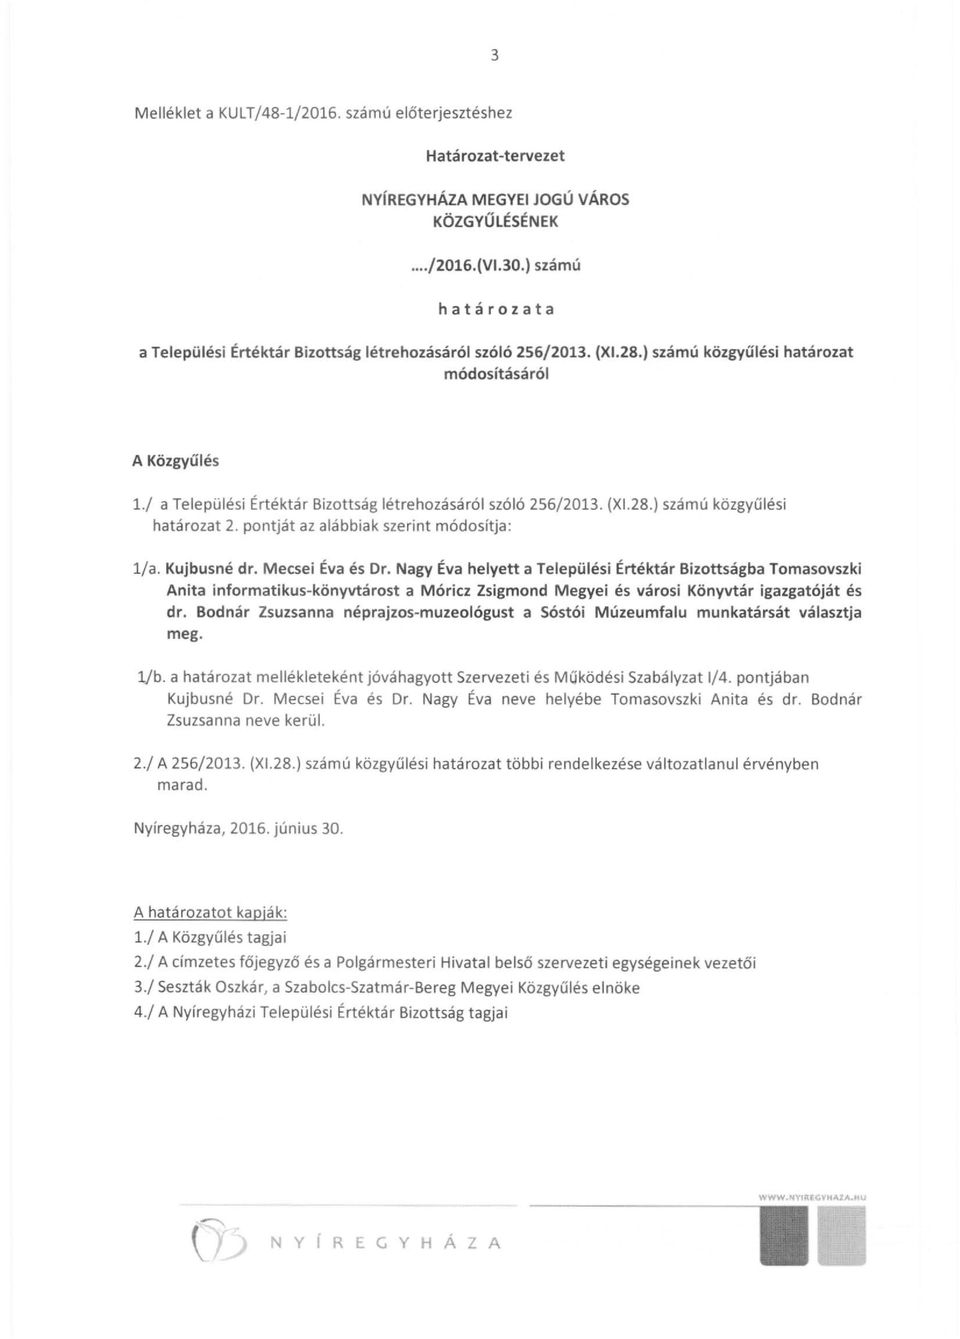 / a Települési Értéktár Bizottság létrehozásáról szó ló 256/2013. (XI.28.) számú közgyű l ési határozat 2. pontját az alábbiak szerint módosítja: l /a. Kujbusné dr. Mecsei Éva és Dr.